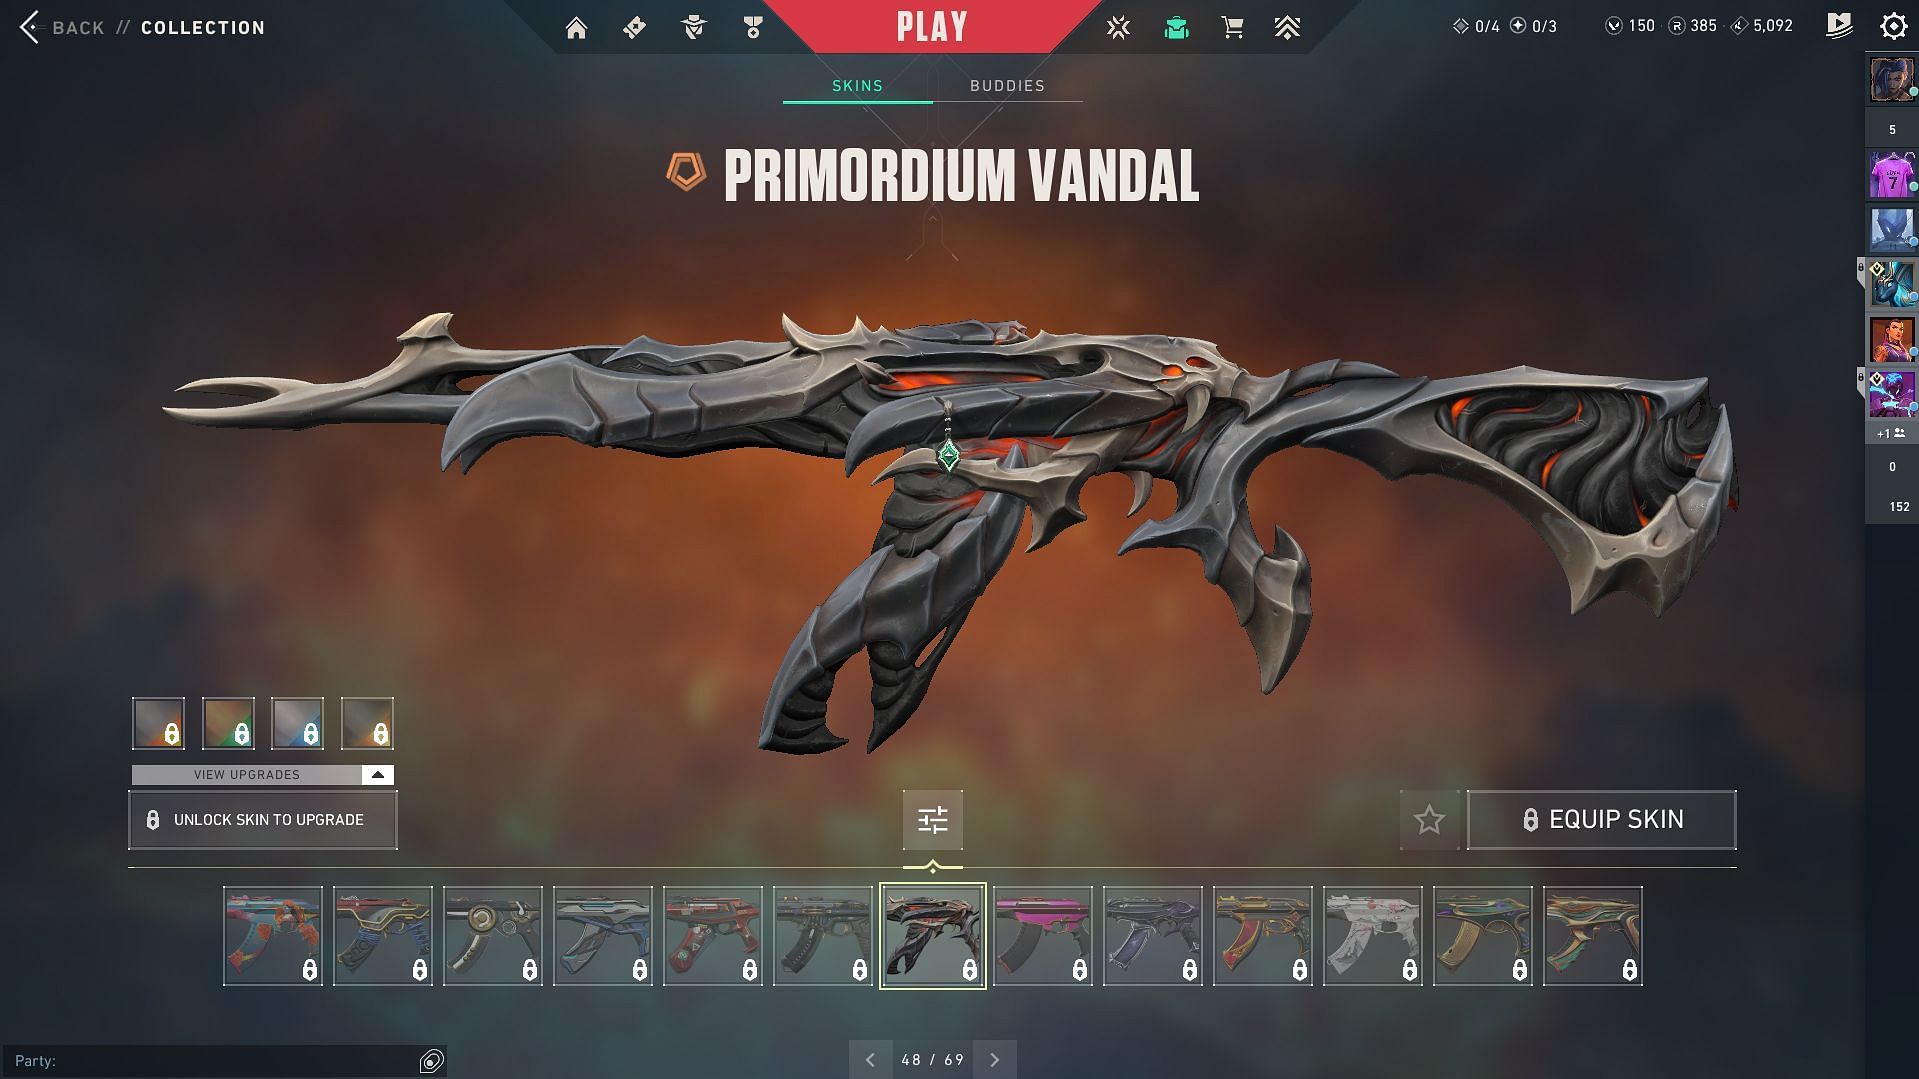 Primordium Vandal (Image via Riot Games)